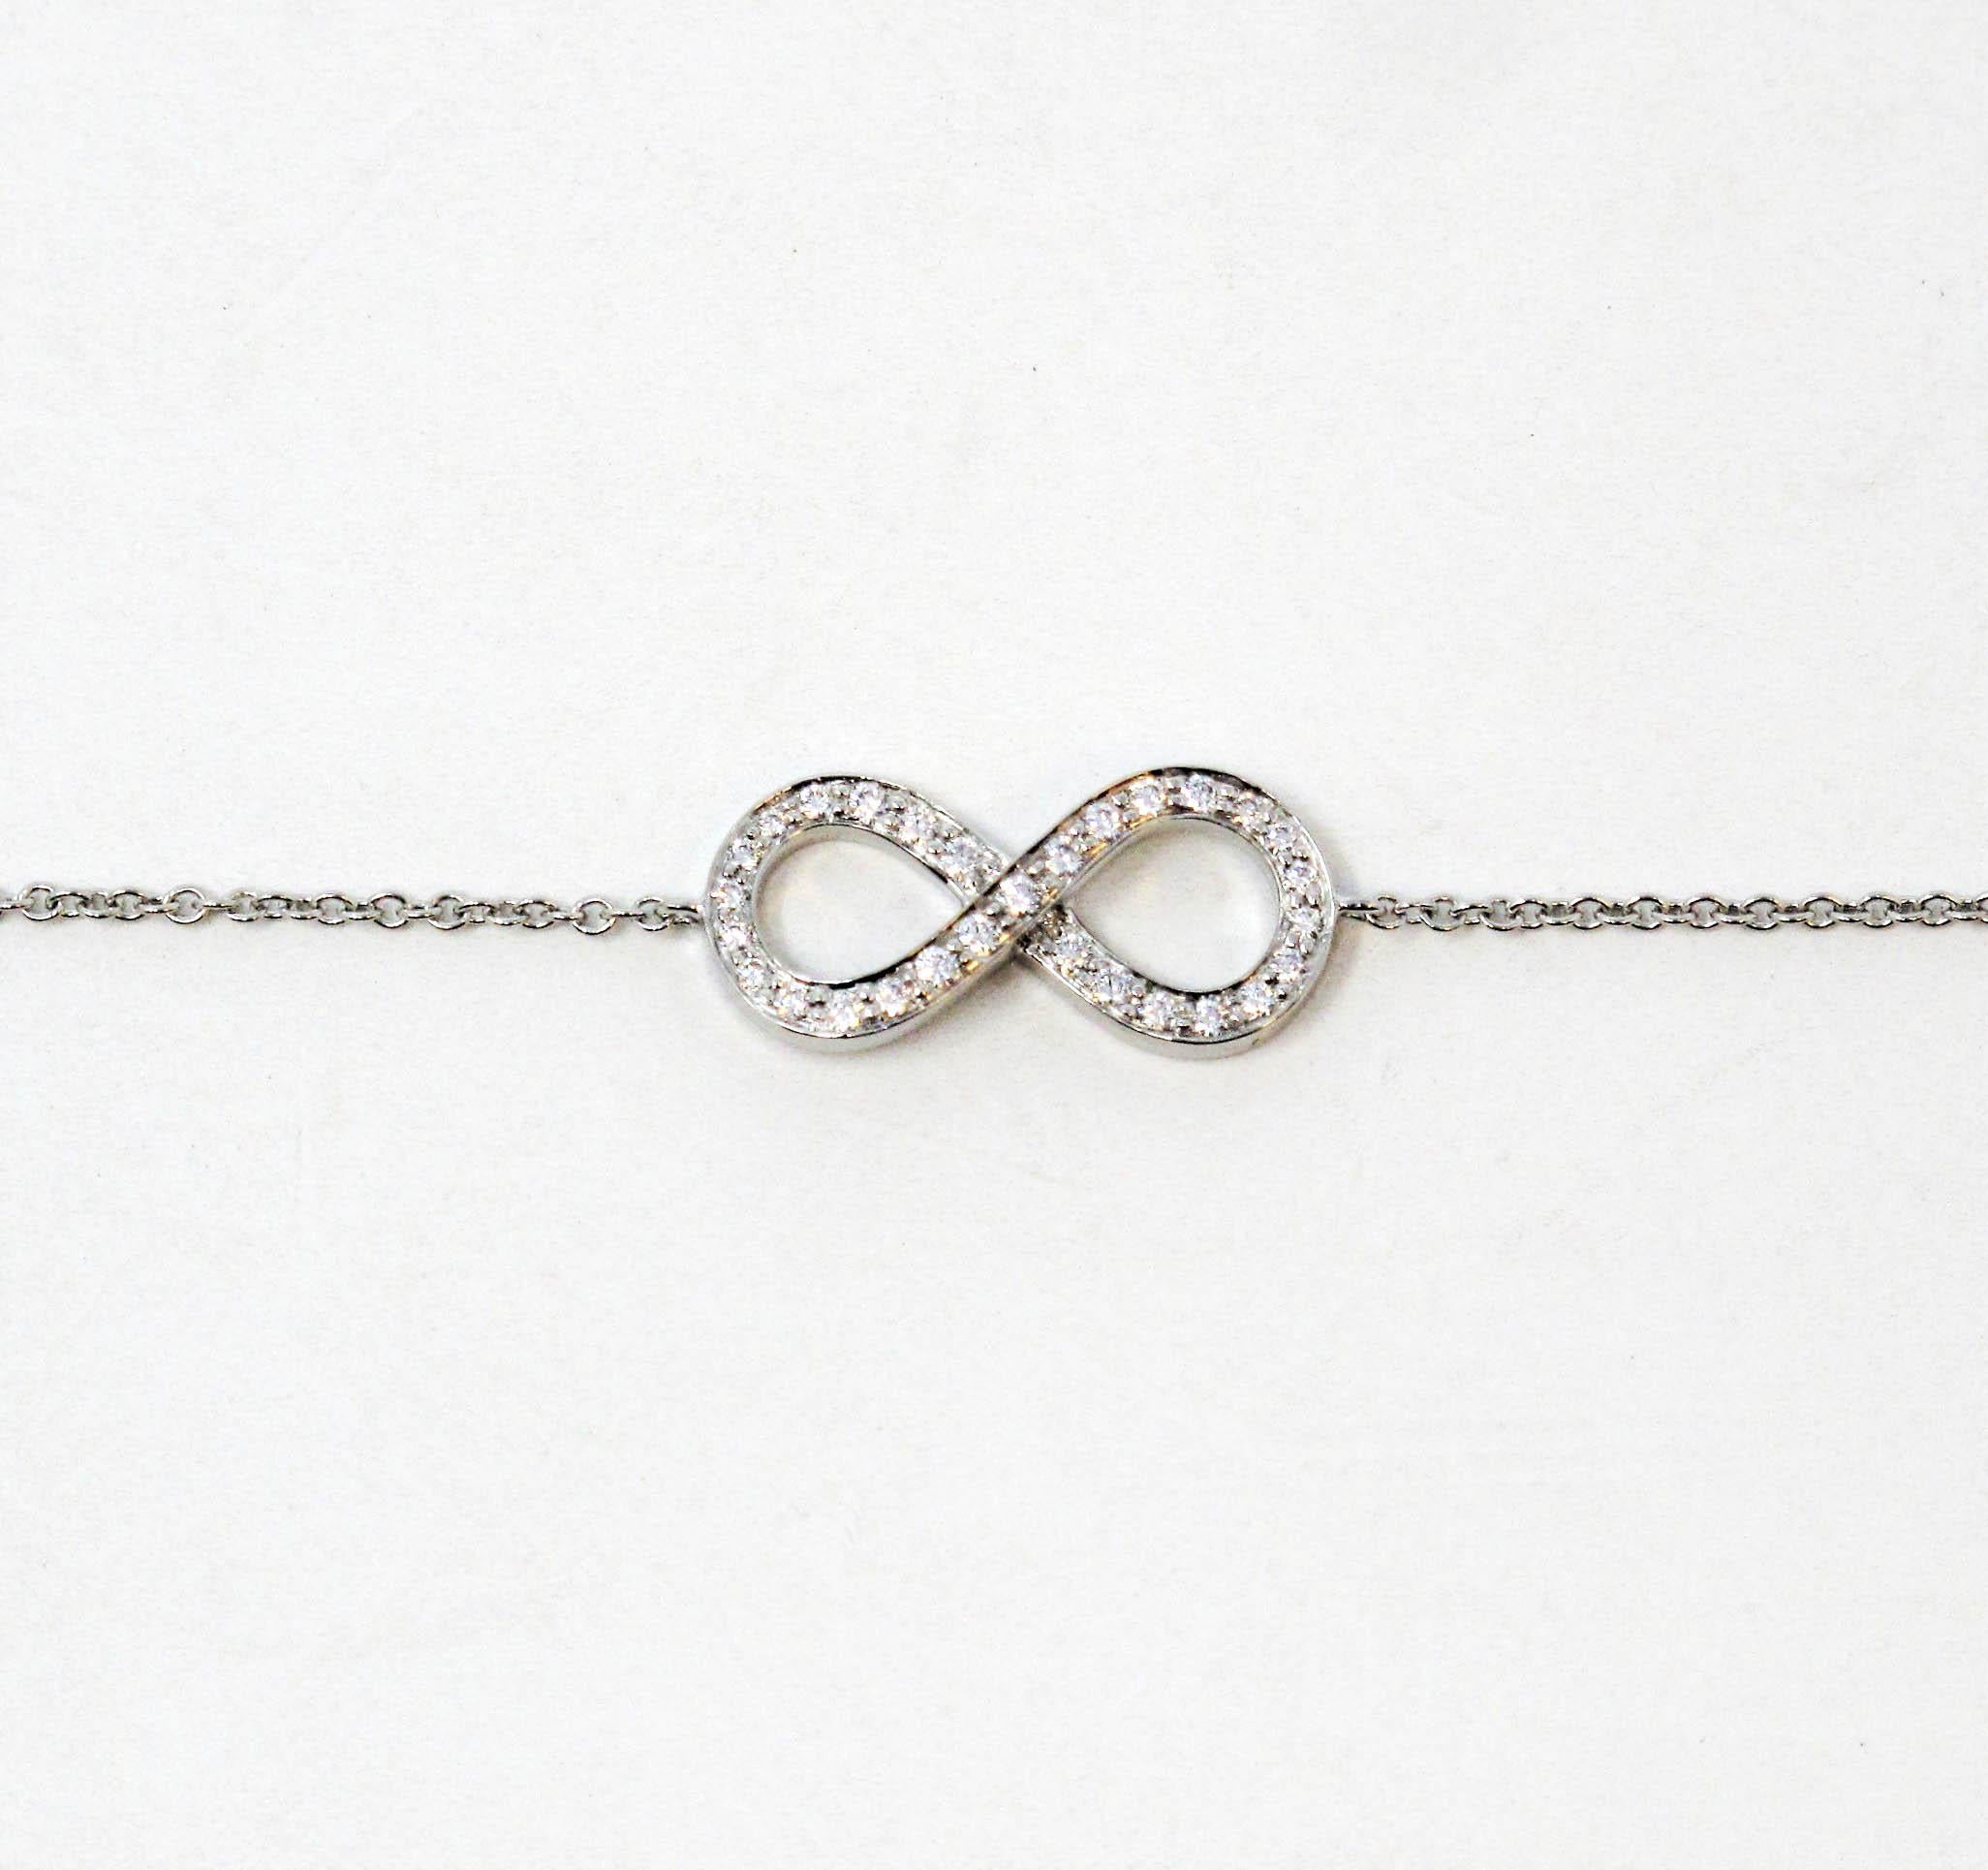 Tiffany Bracelet With X Diamonds - 4 For Sale on 1stDibs | tiffany bracelet  safety chain, safety chain for tiffany bracelet